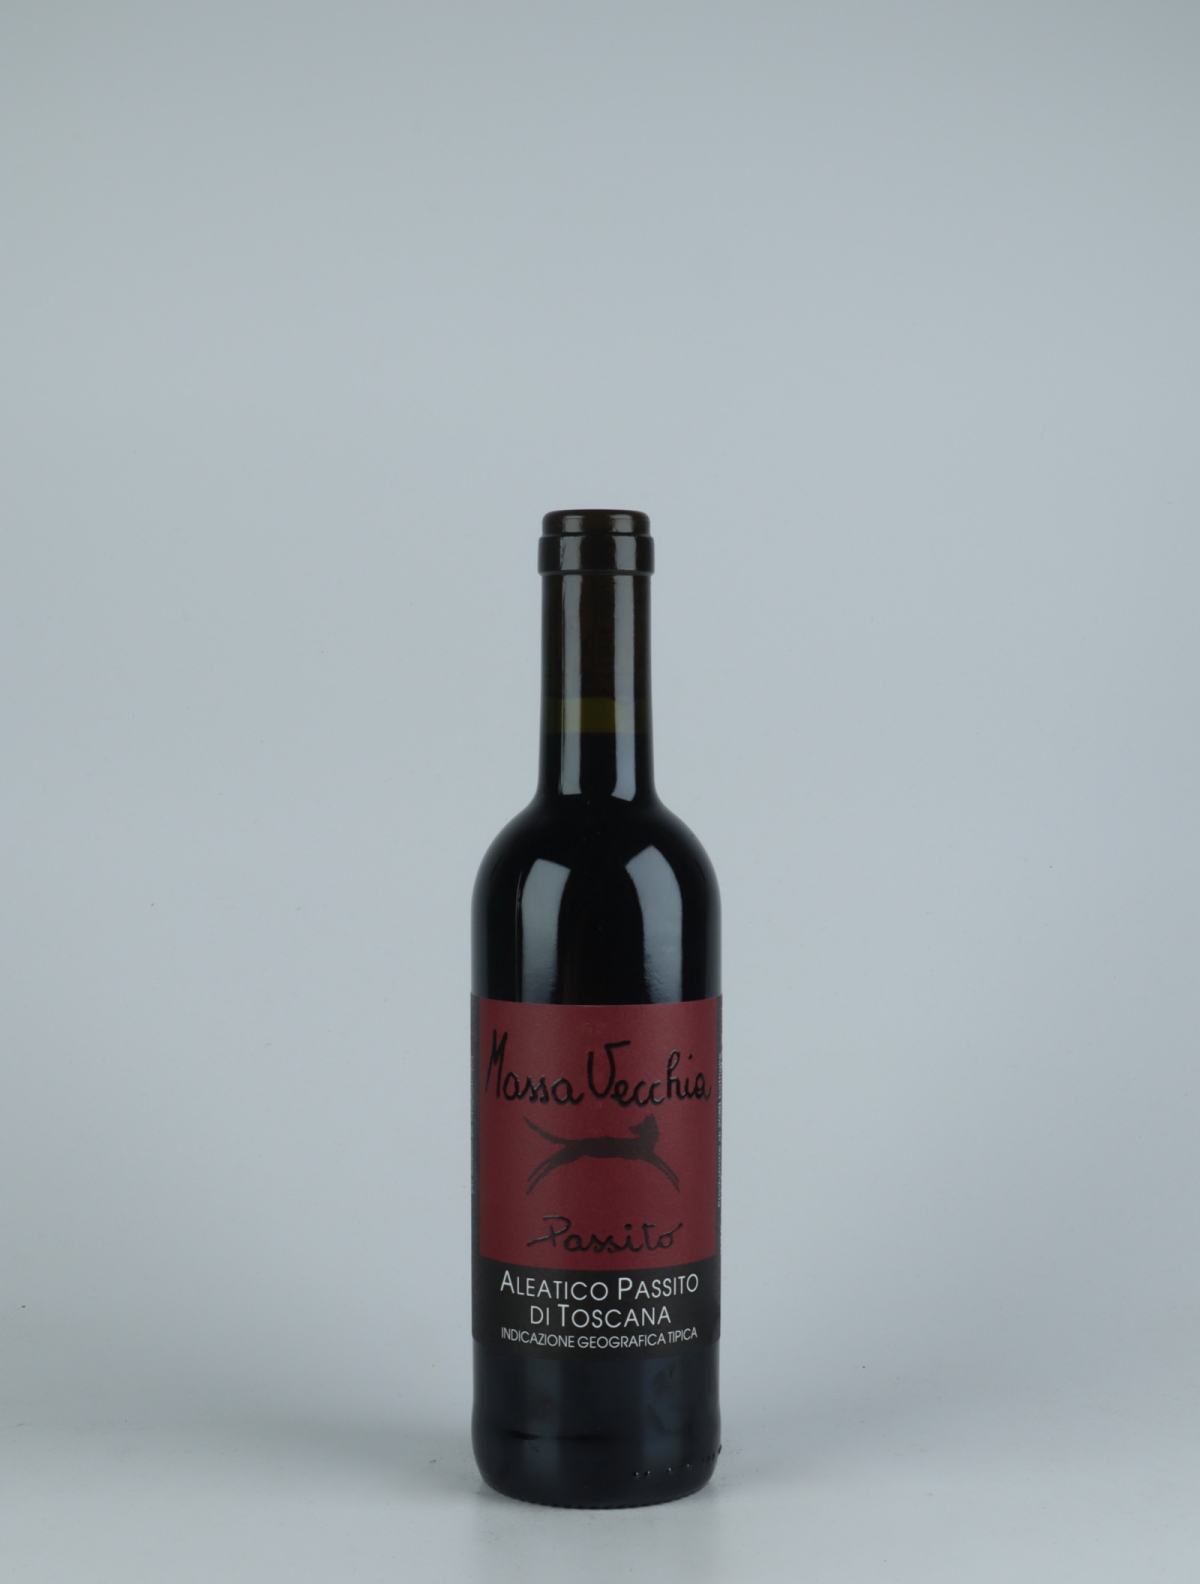 En flaske N.V. Passito Aleatico (17/19) Sød vin fra Massa Vecchia, Toscana i Italien